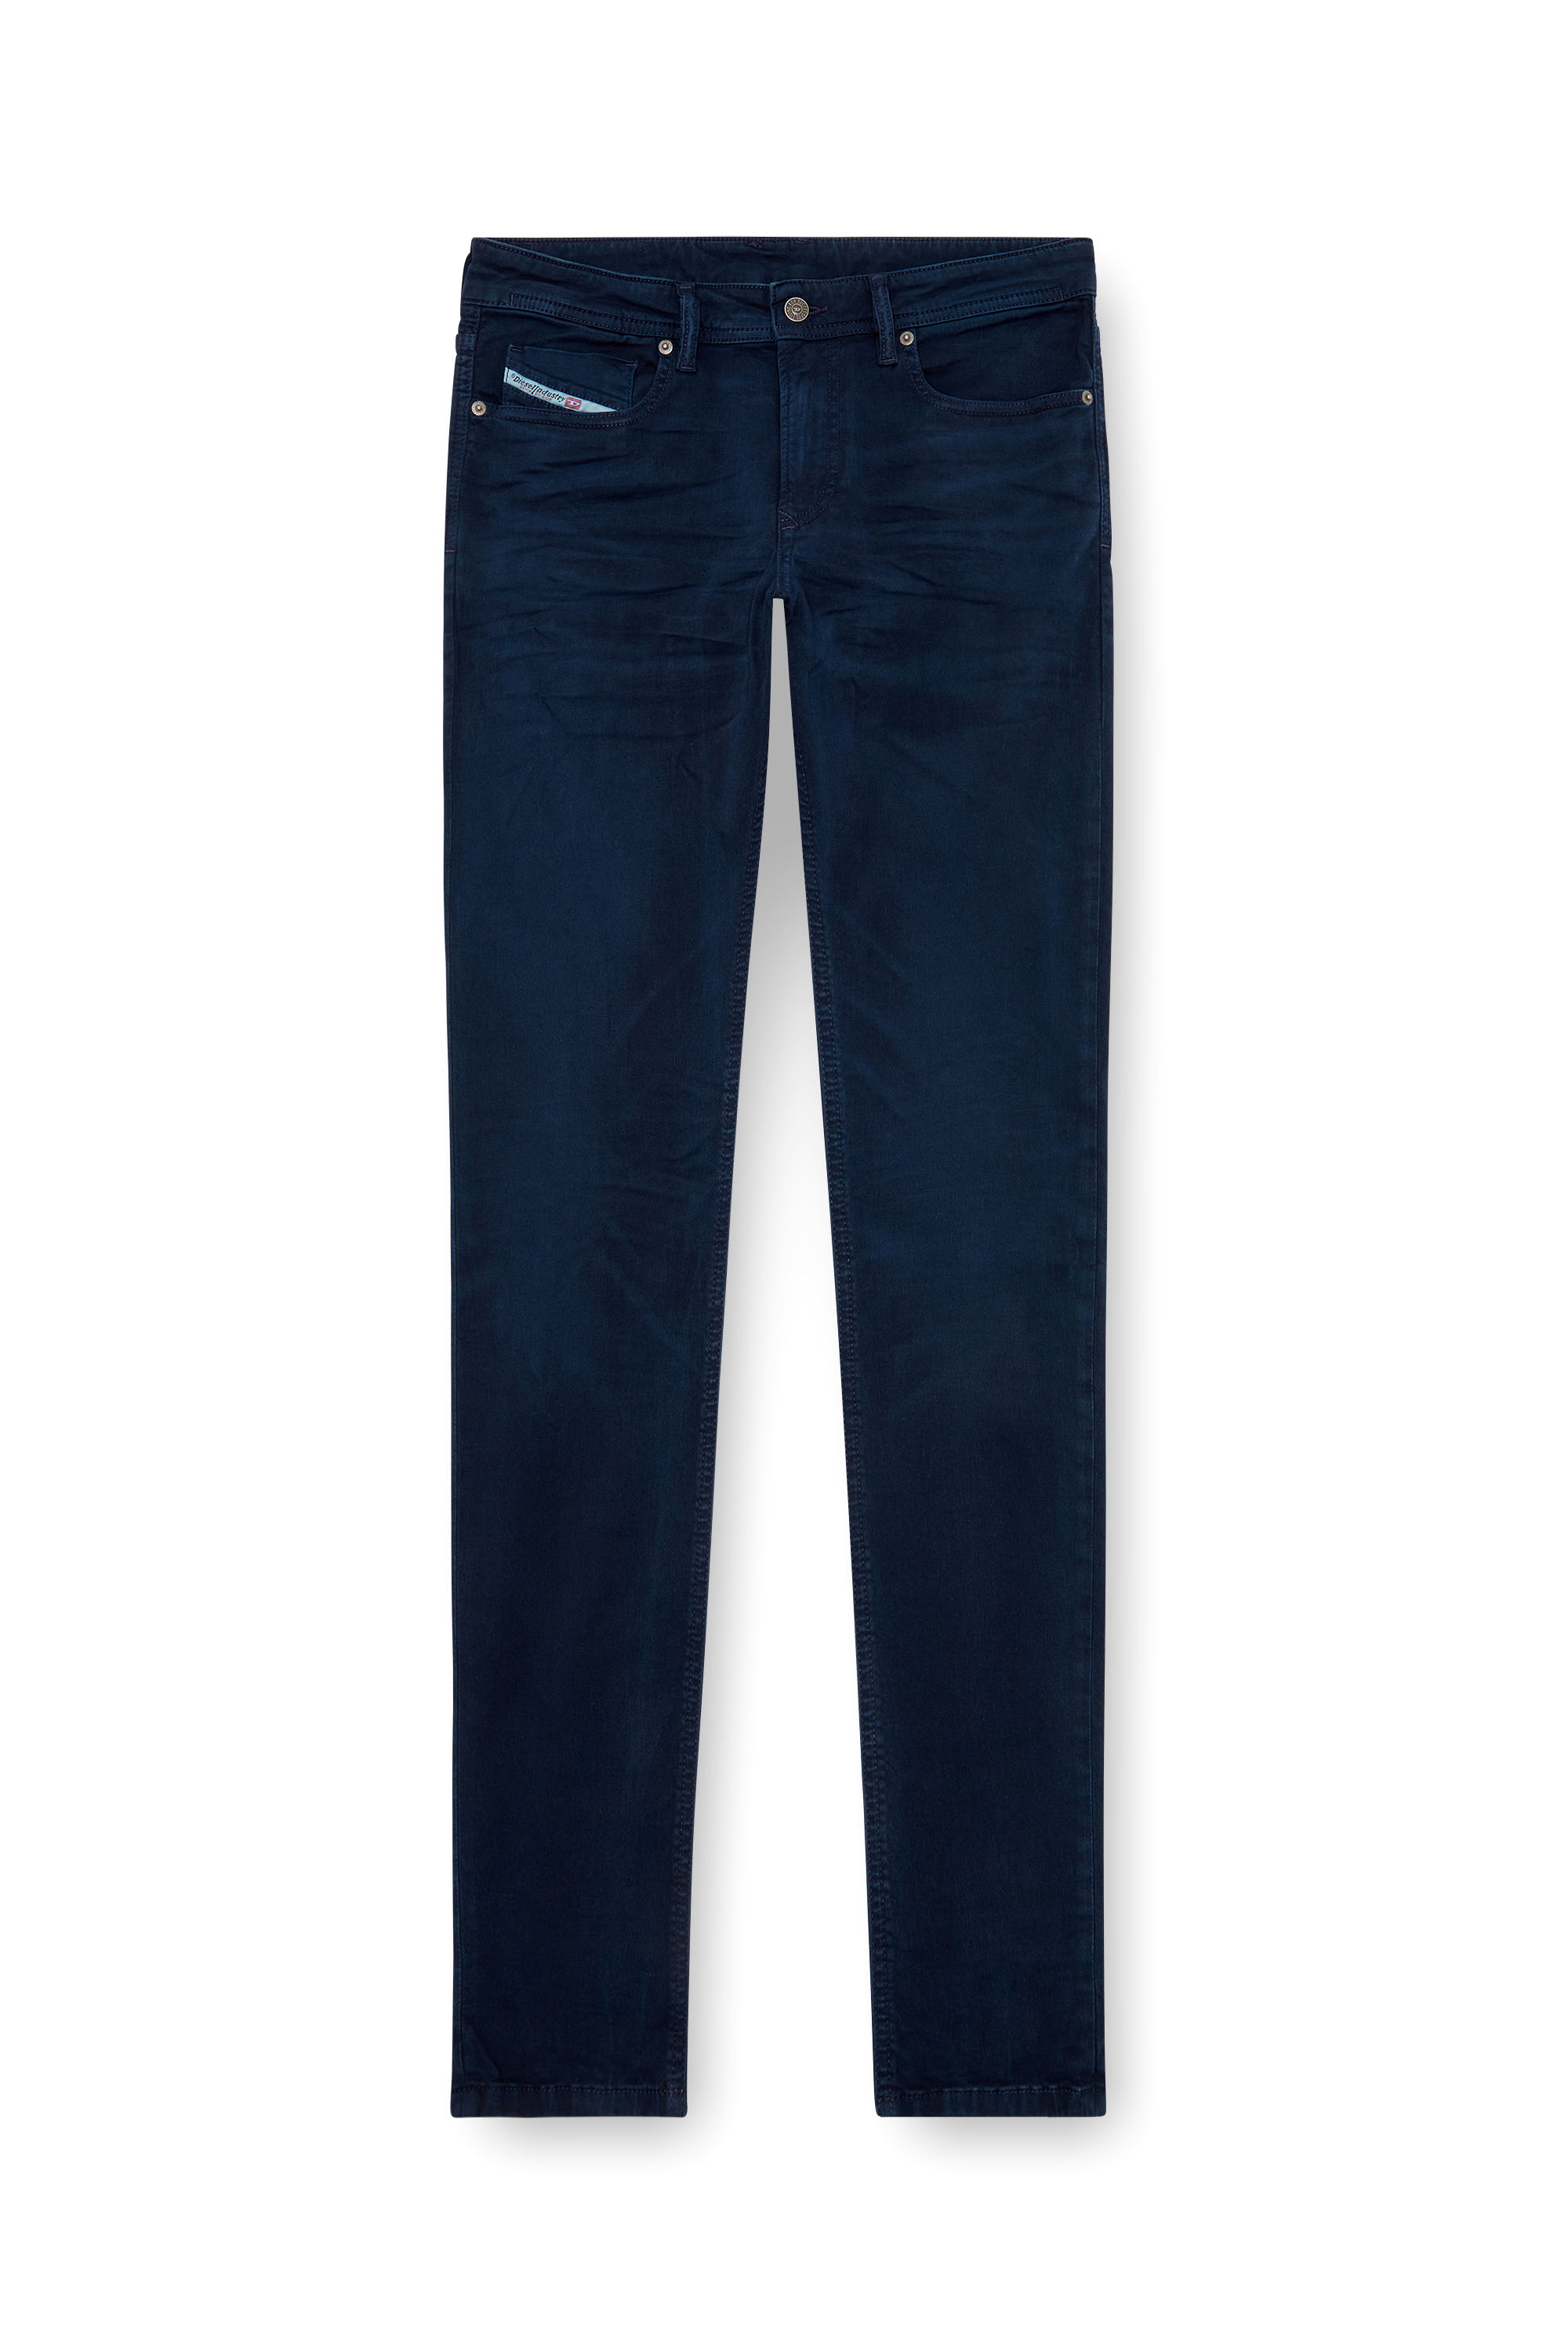 Diesel - Man Skinny Jeans 1979 Sleenker 0ENAK, Dark Blue - Image 3